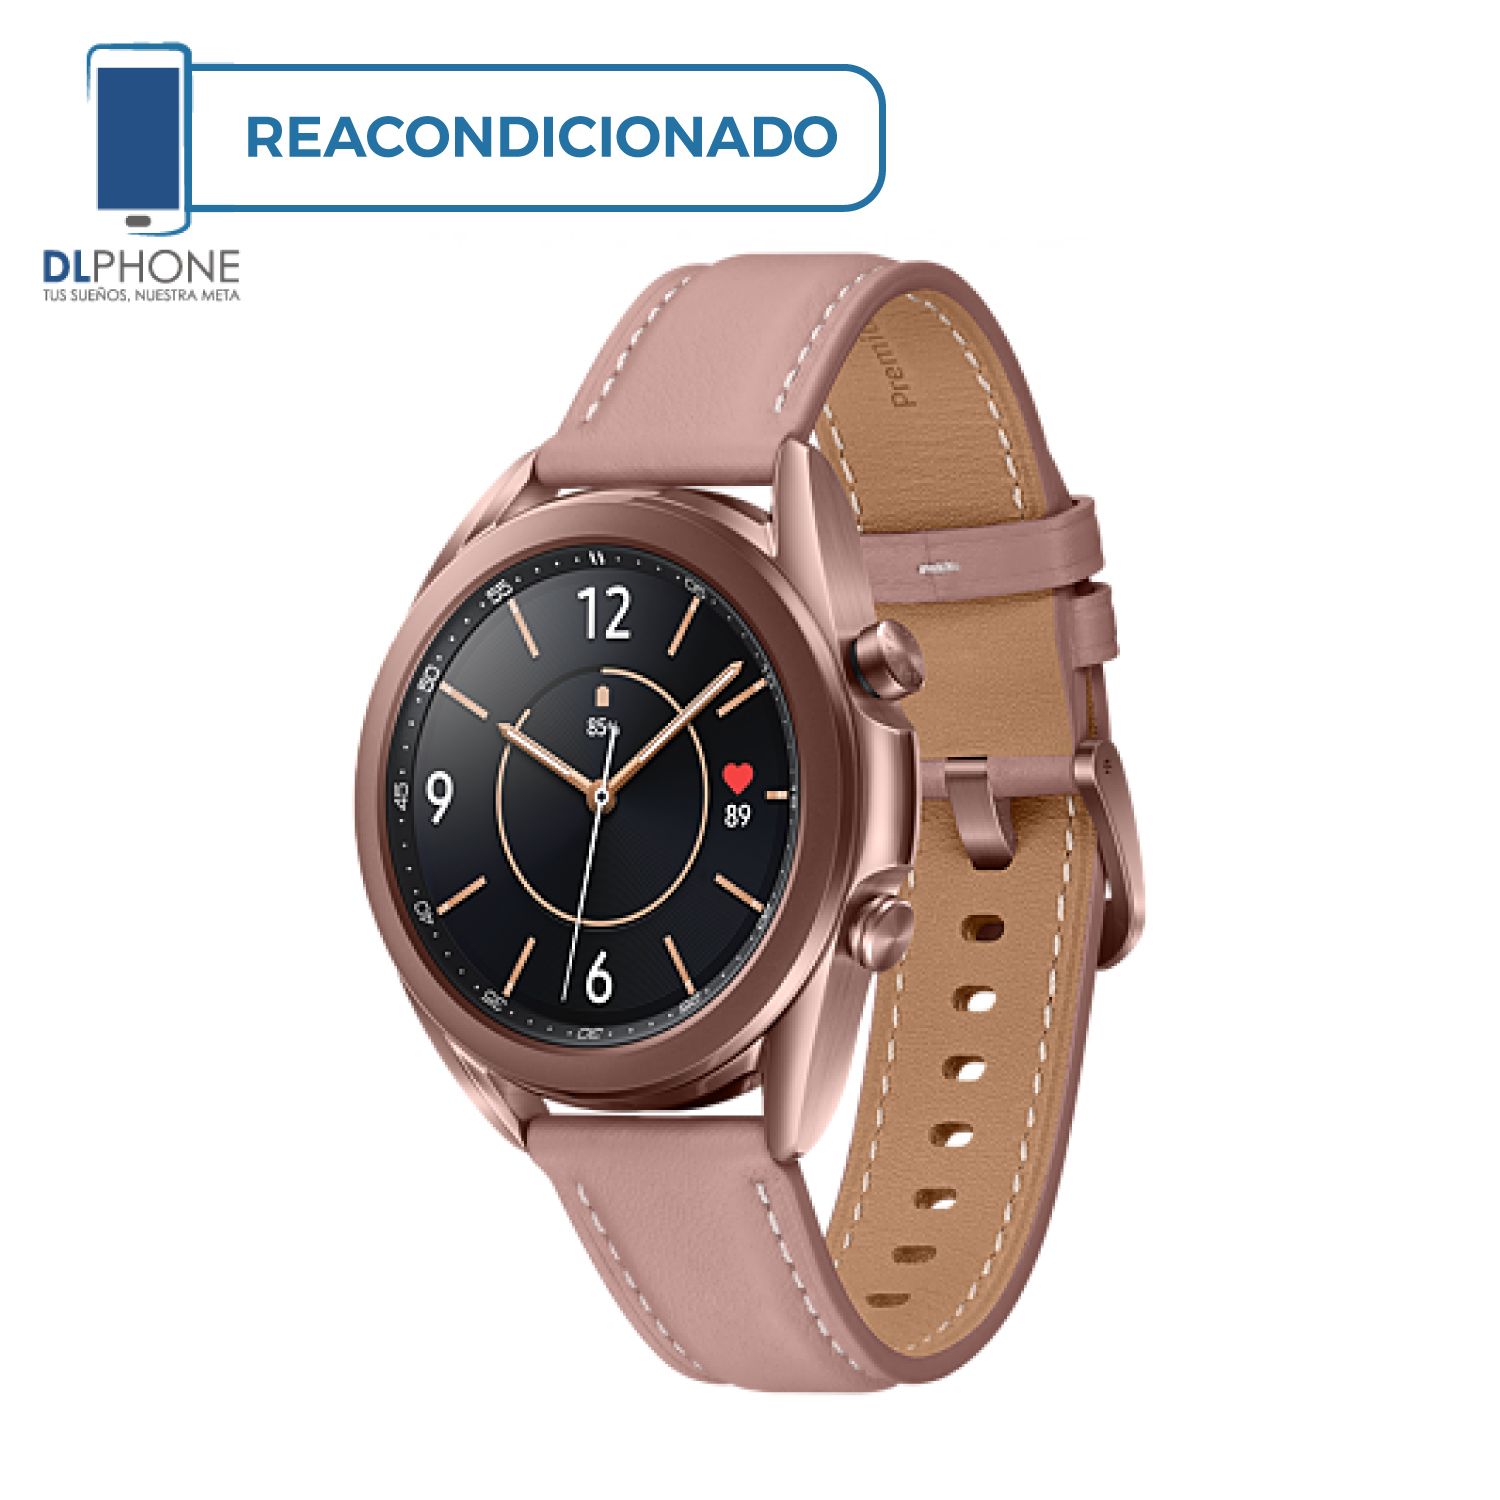 Samsung Galaxy Watch 3 de 41mm R855 Bronce Reacondicionado